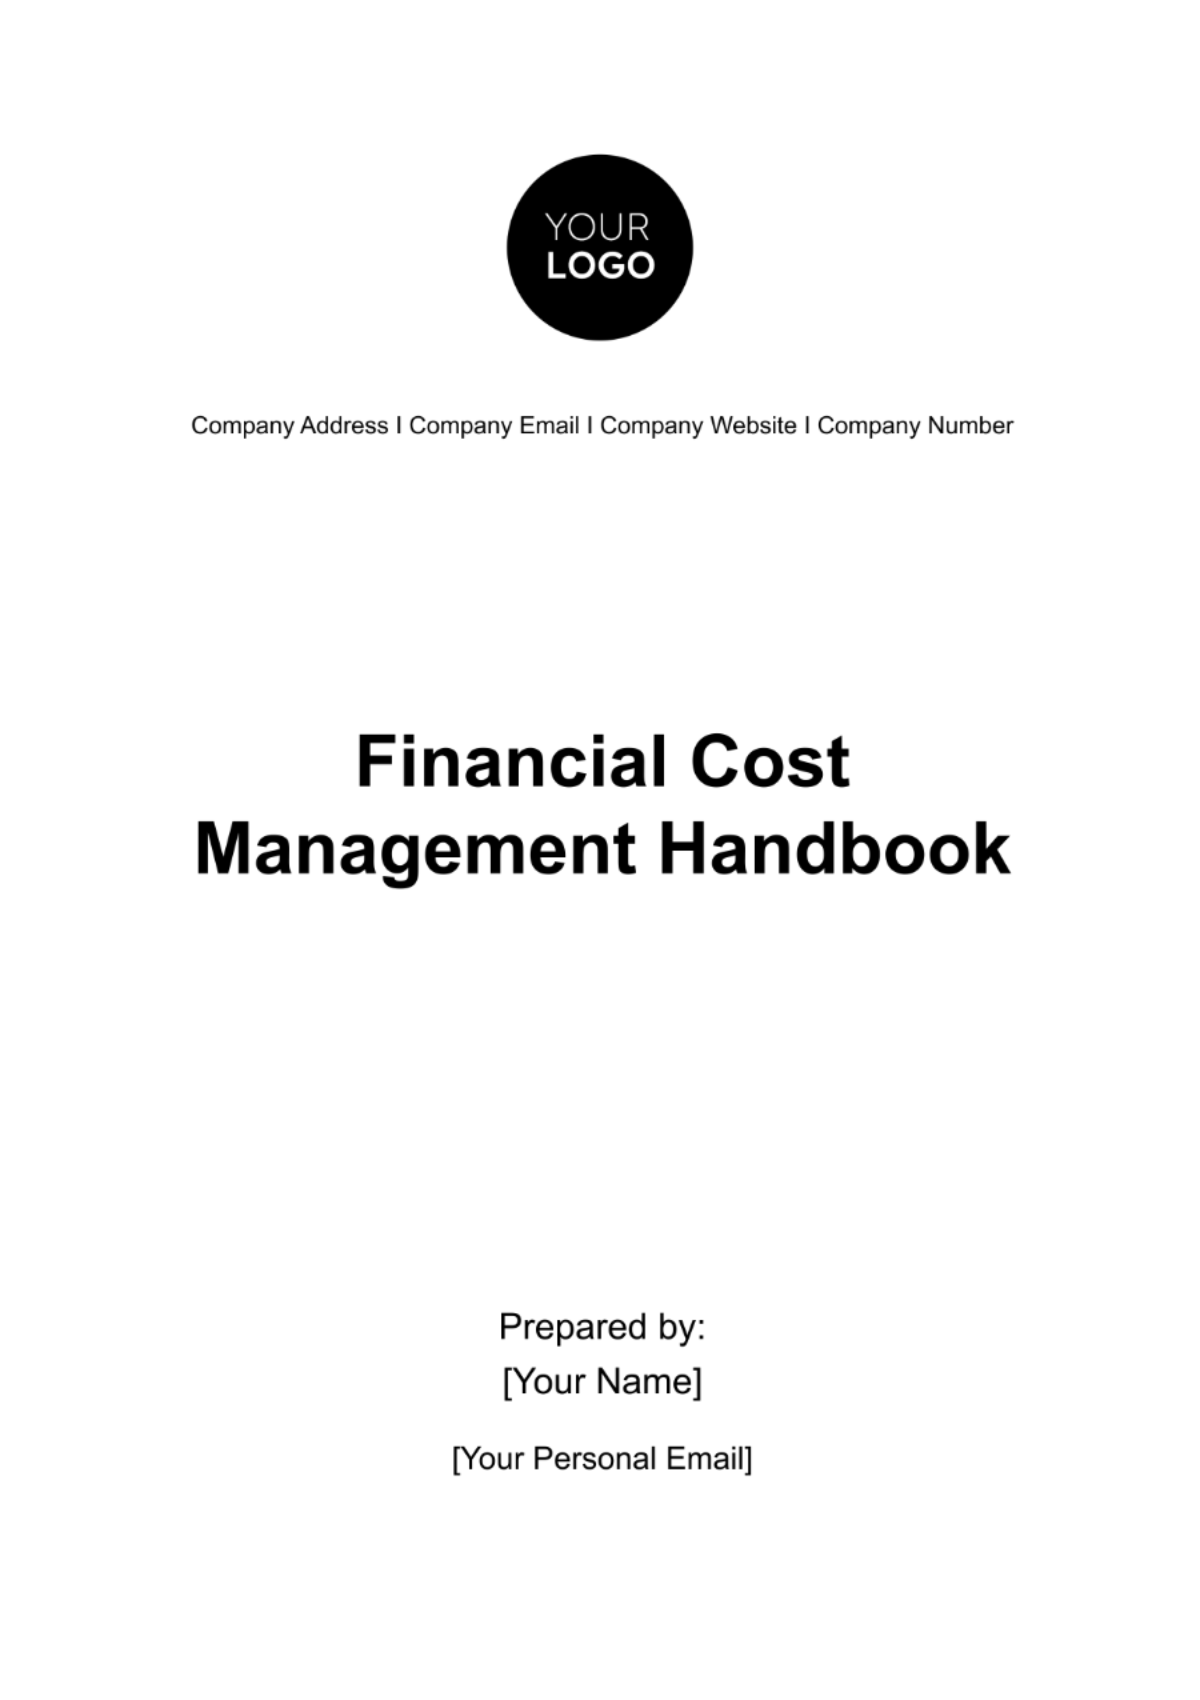 Financial Cost Management Handbook Template